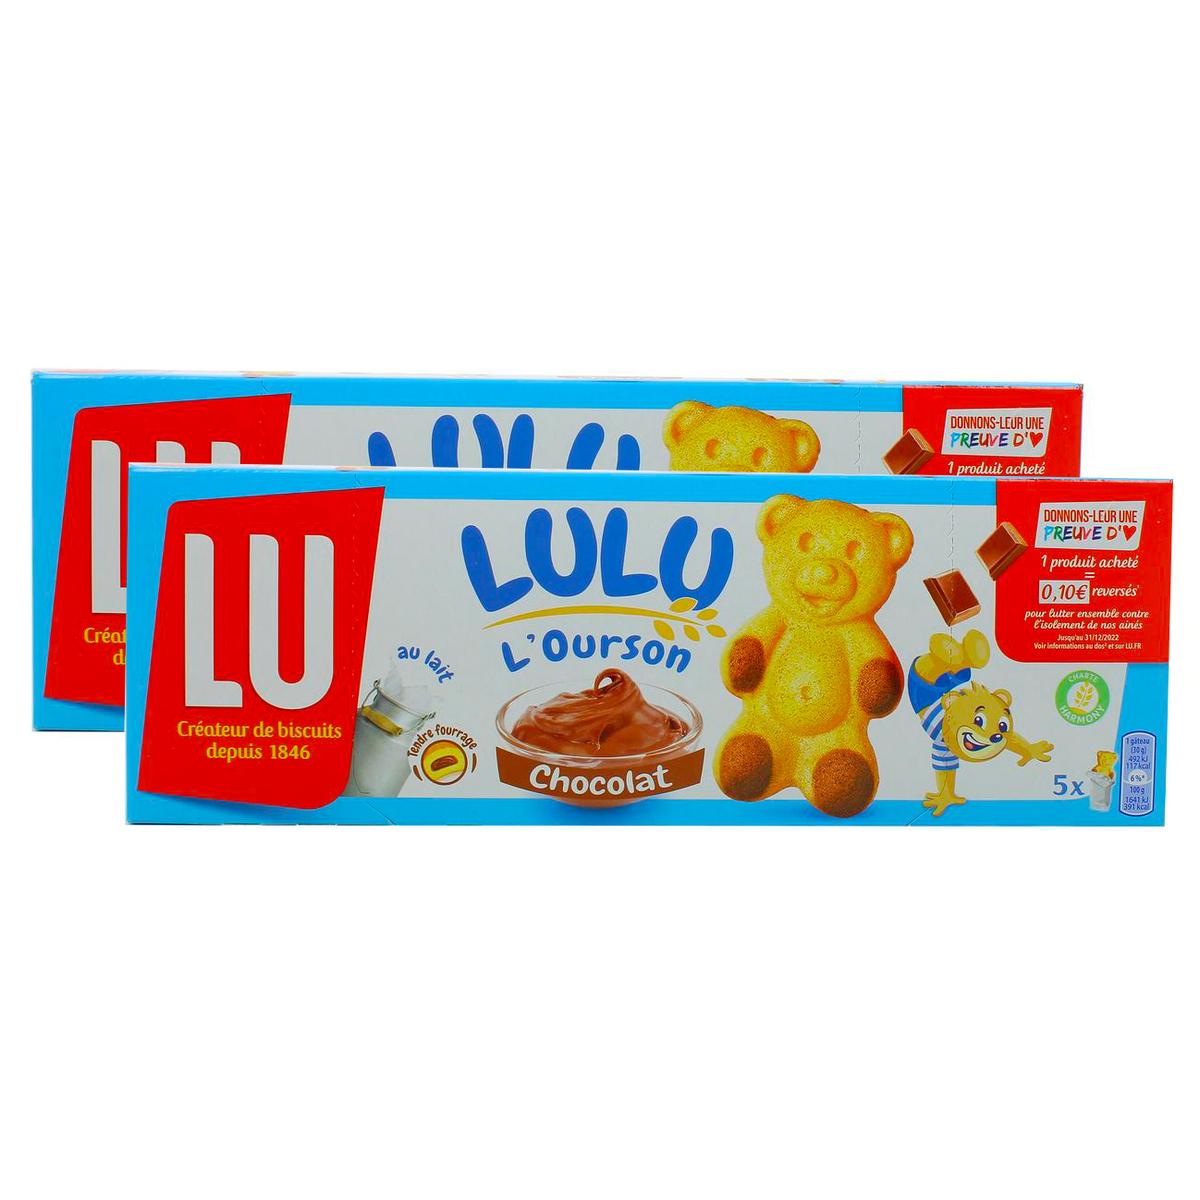 Lulu, L'Ourson, Chocolat